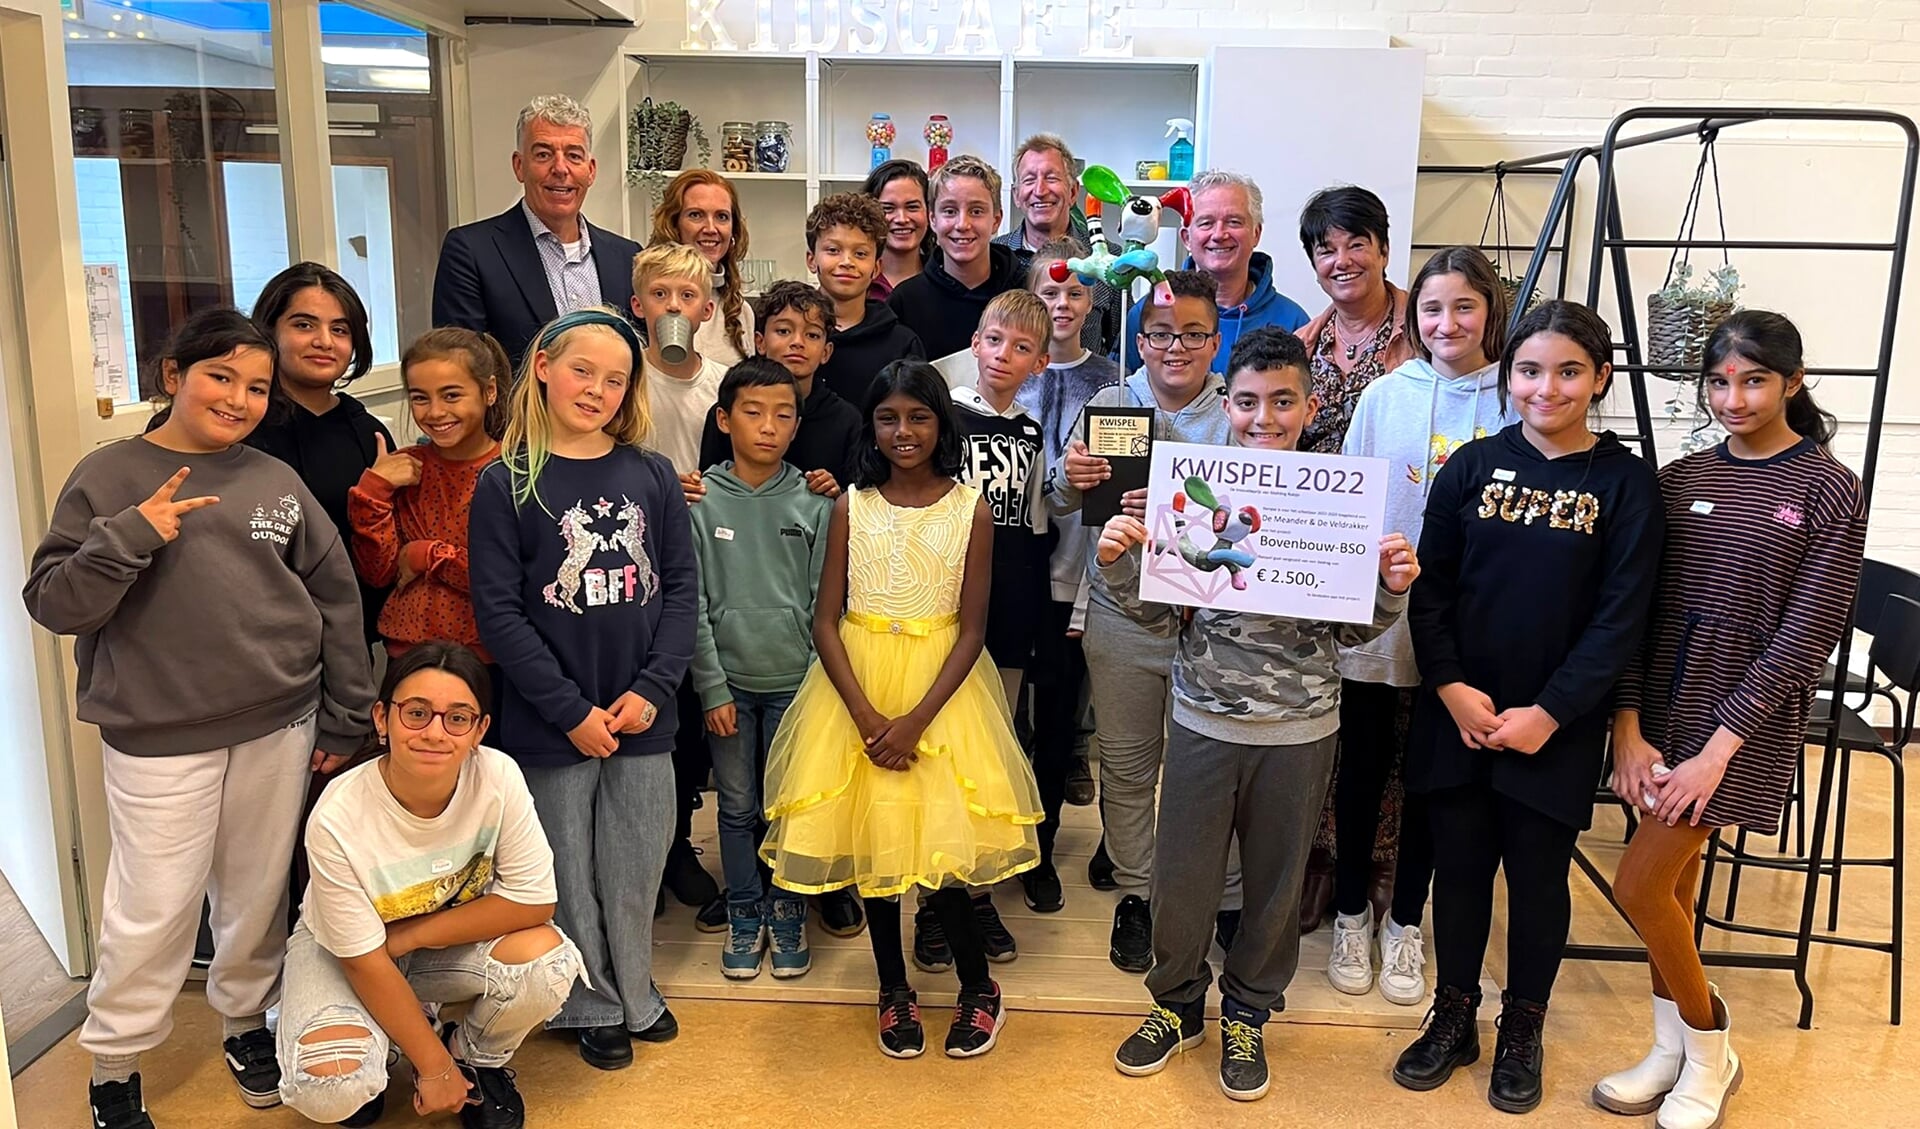 Het Kidscafé wint de innovatieprijs 'Kwispel' van Stichting Robijn.